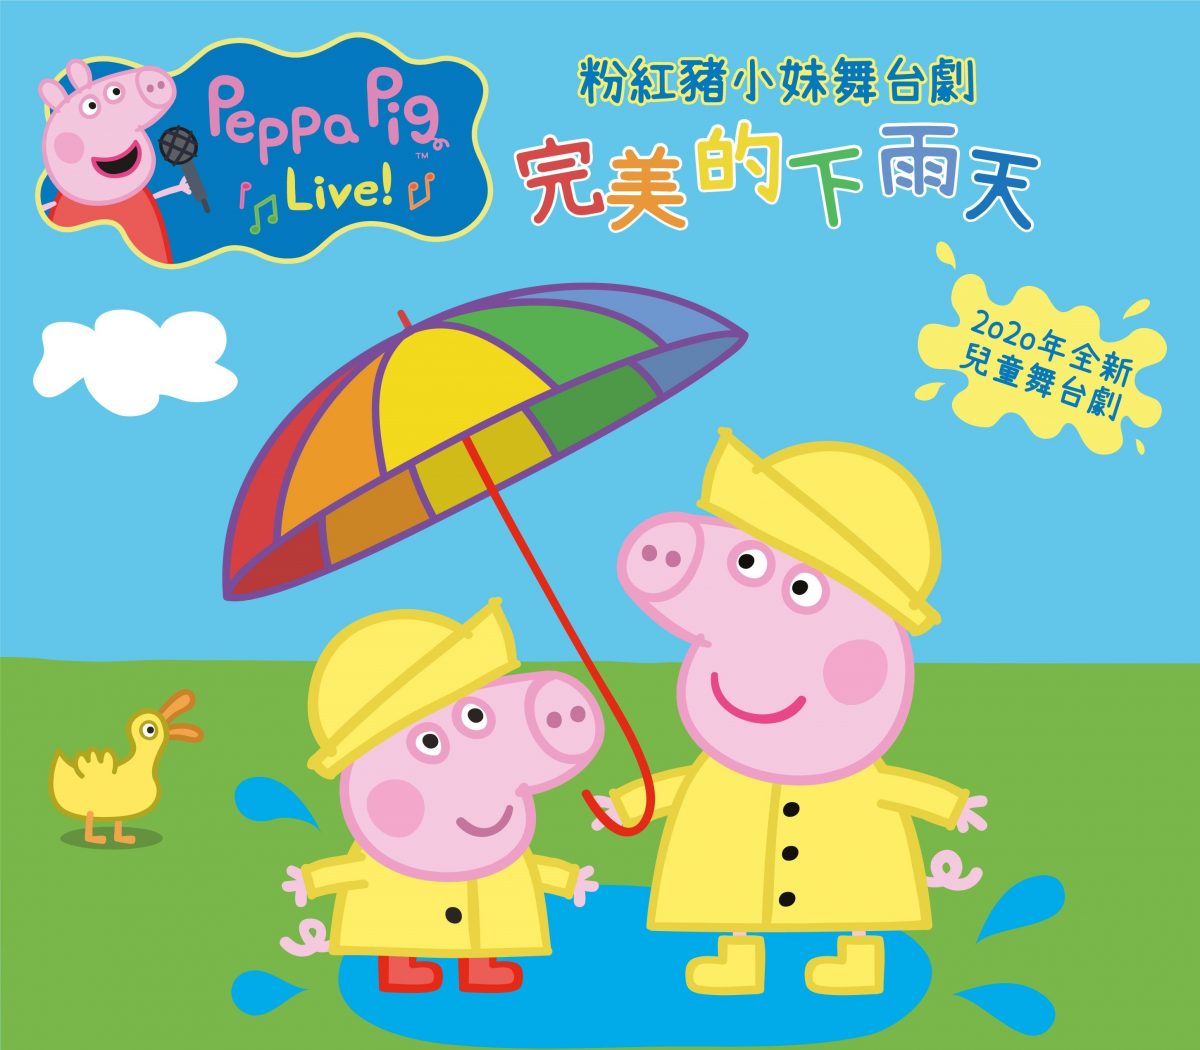 台北君悅,粉紅豬小妹,佩佩豬,Peppa Pig,舞台劇